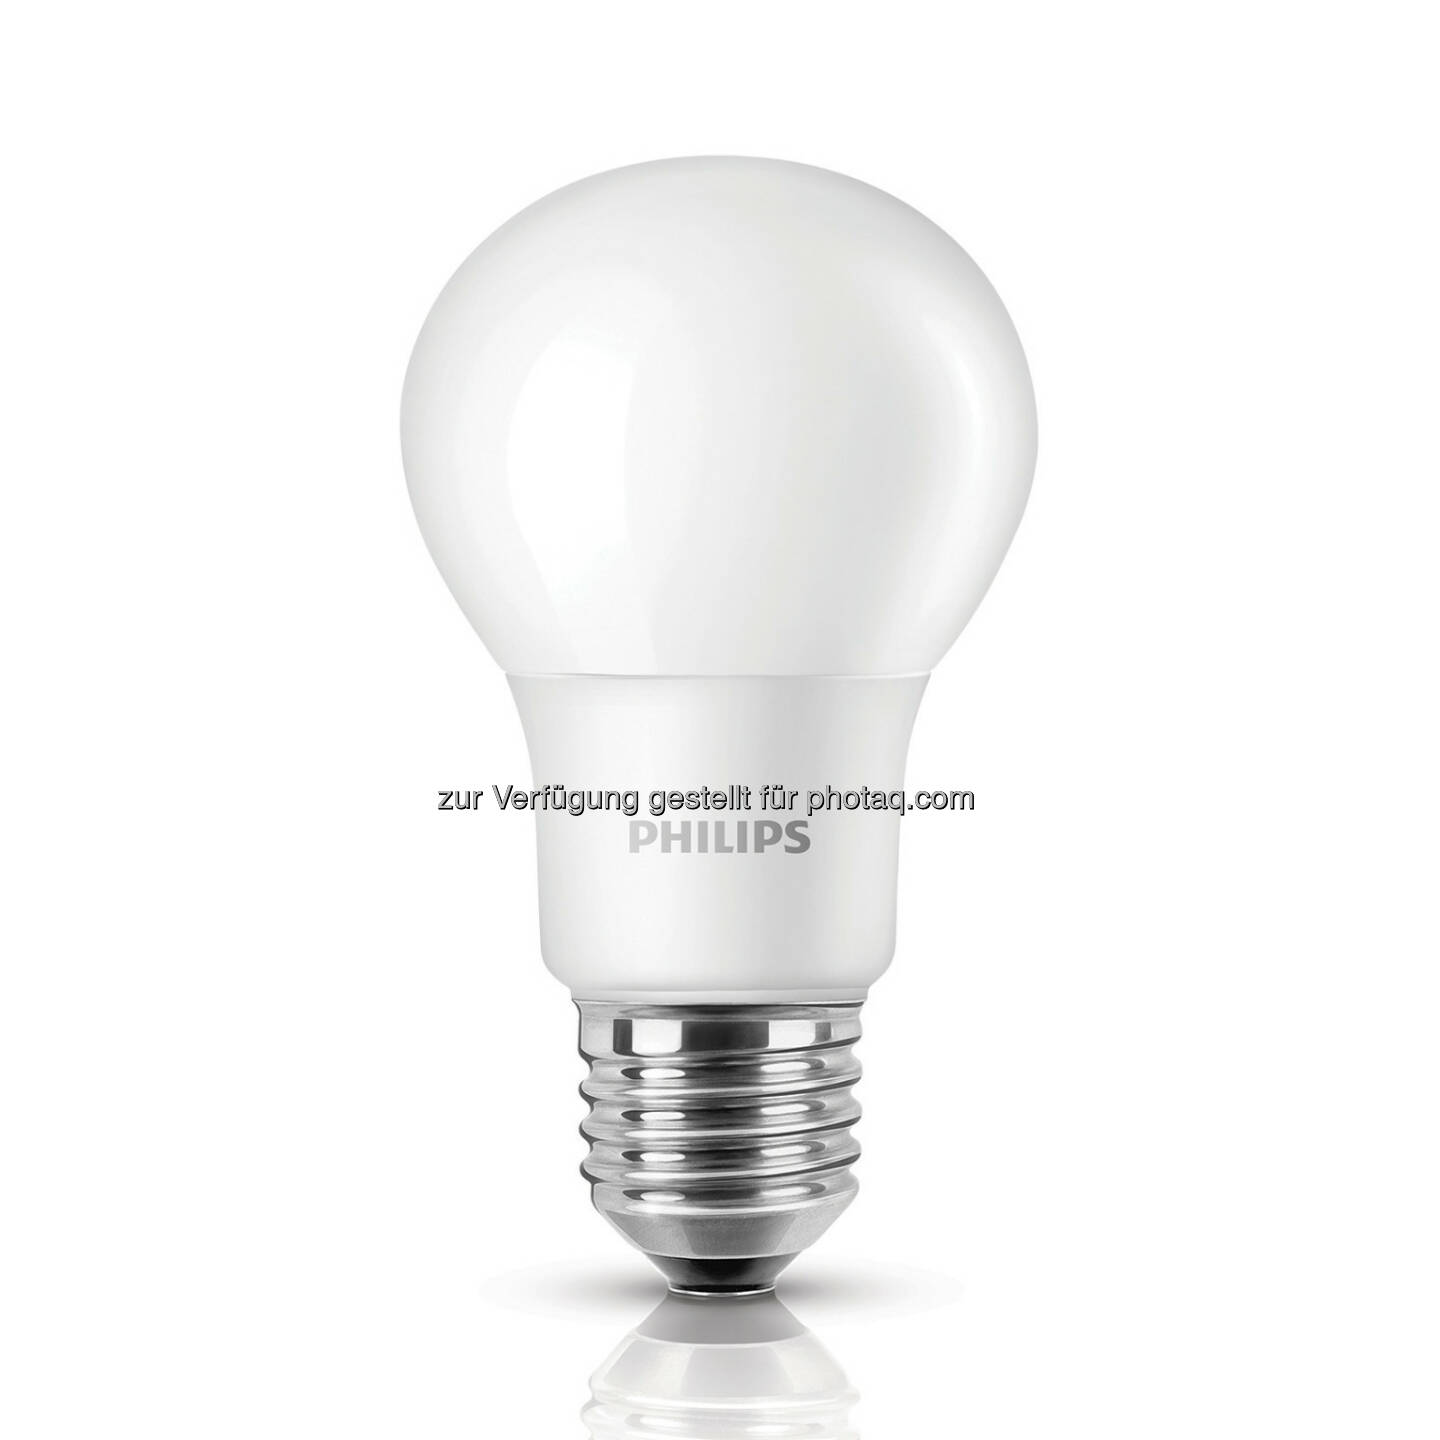 Mit einer Lebensdauer von 15 Jahren sind LED-Lampen besonders langlebig und energieeffizient. - Philips Lighting Austria GmbH: Nachhaltigkeit als Herzstück der Geschäftsstrategie von Philips Lighting (Fotocredit: Philips Lighting)